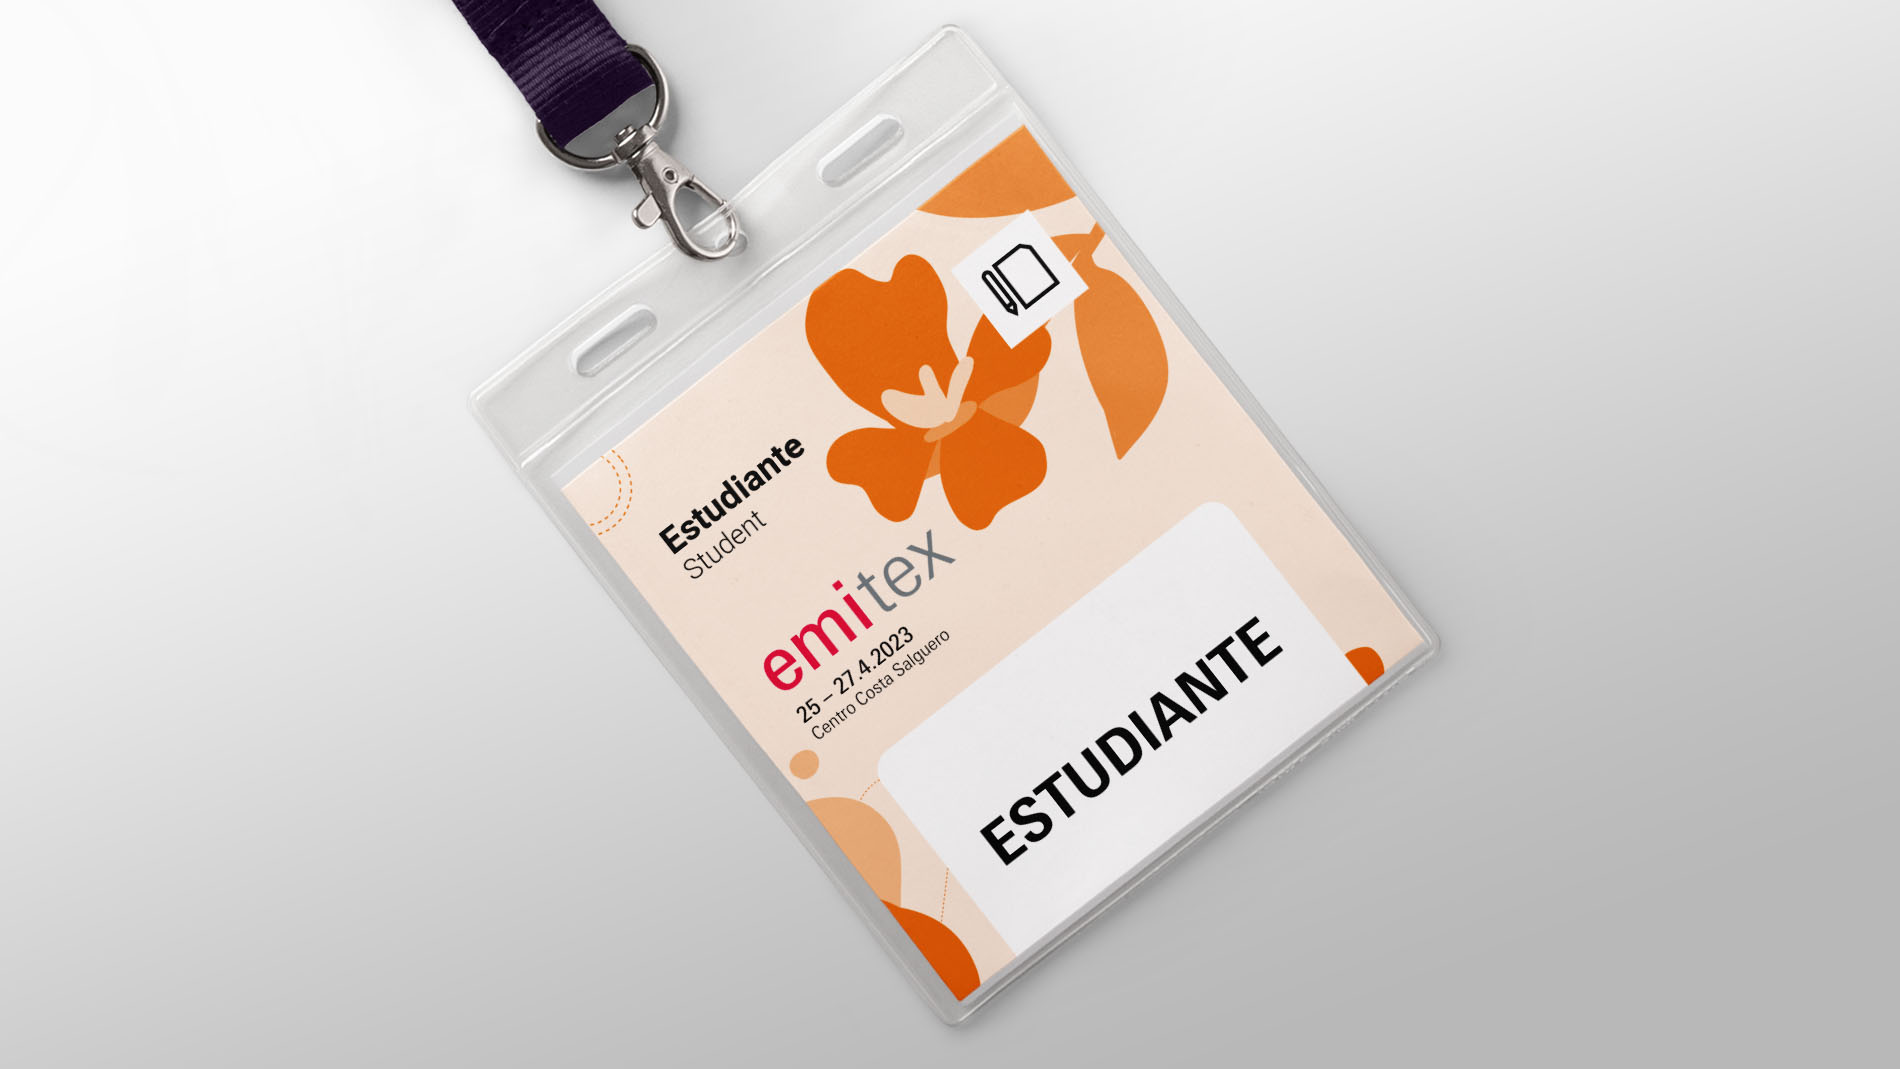 Emitex - Credencial estudiantes